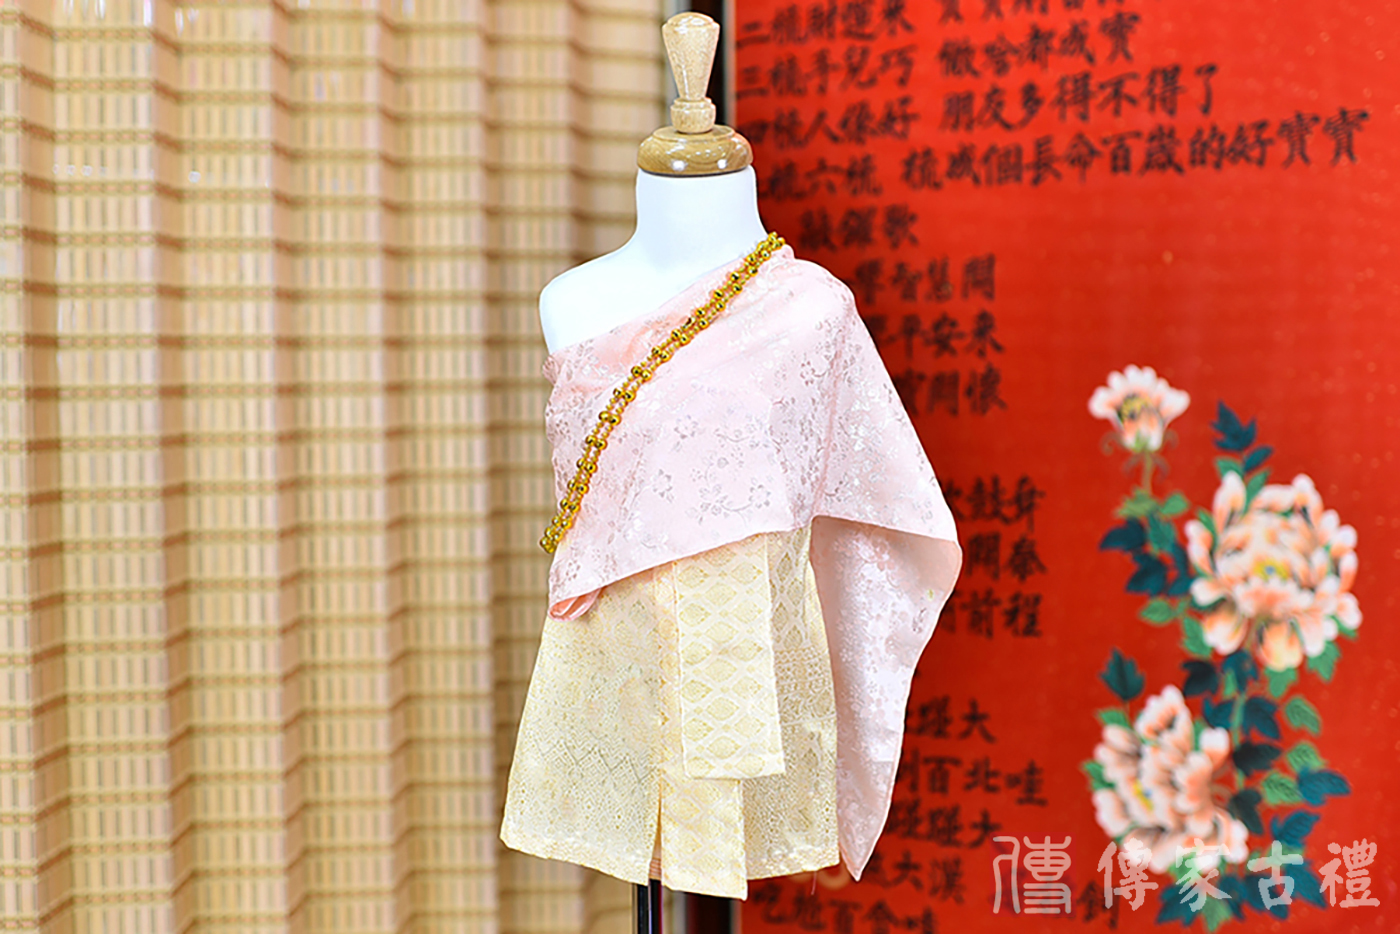 2024-02-23小孩皇室泰服古裝禮服。淺粉色的紋路披肩上衣搭配金色泰國圖案紋路裙裝的泰式古裝禮服。照片集